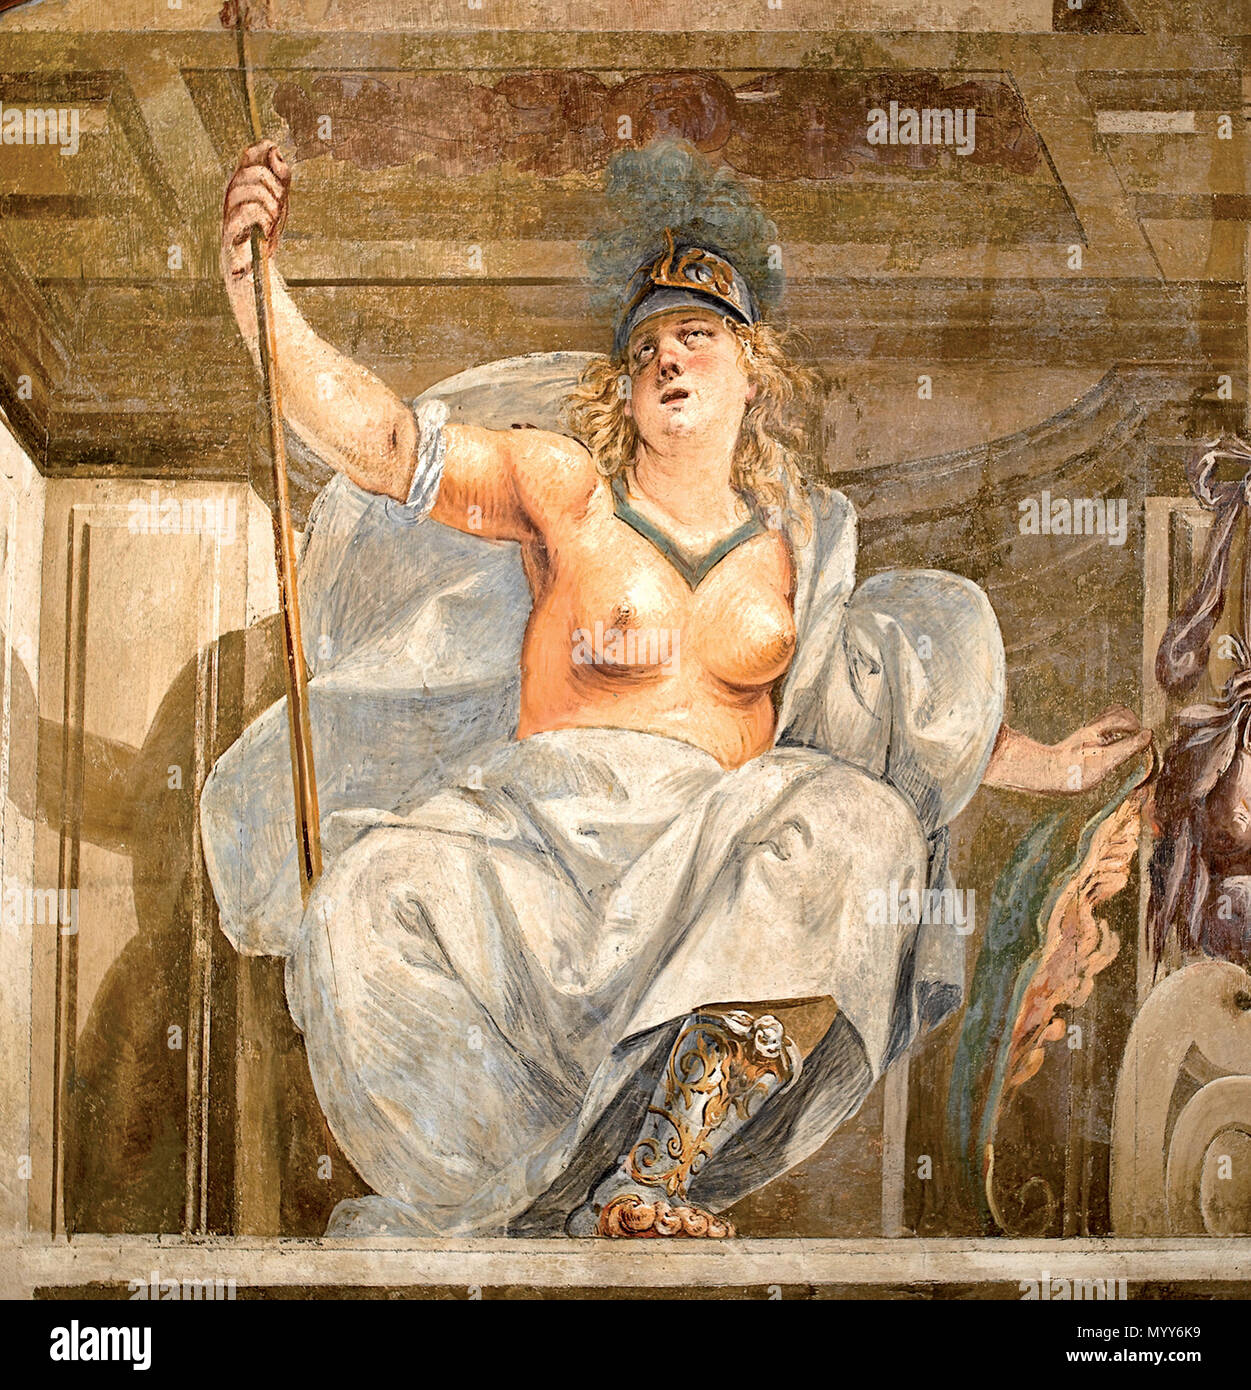 . Italiano : Minerva, l'amministrazione del ciclo affrescato raffigurante le Storie di Achille 71 Minerva - G.S. Montalto Banque D'Images